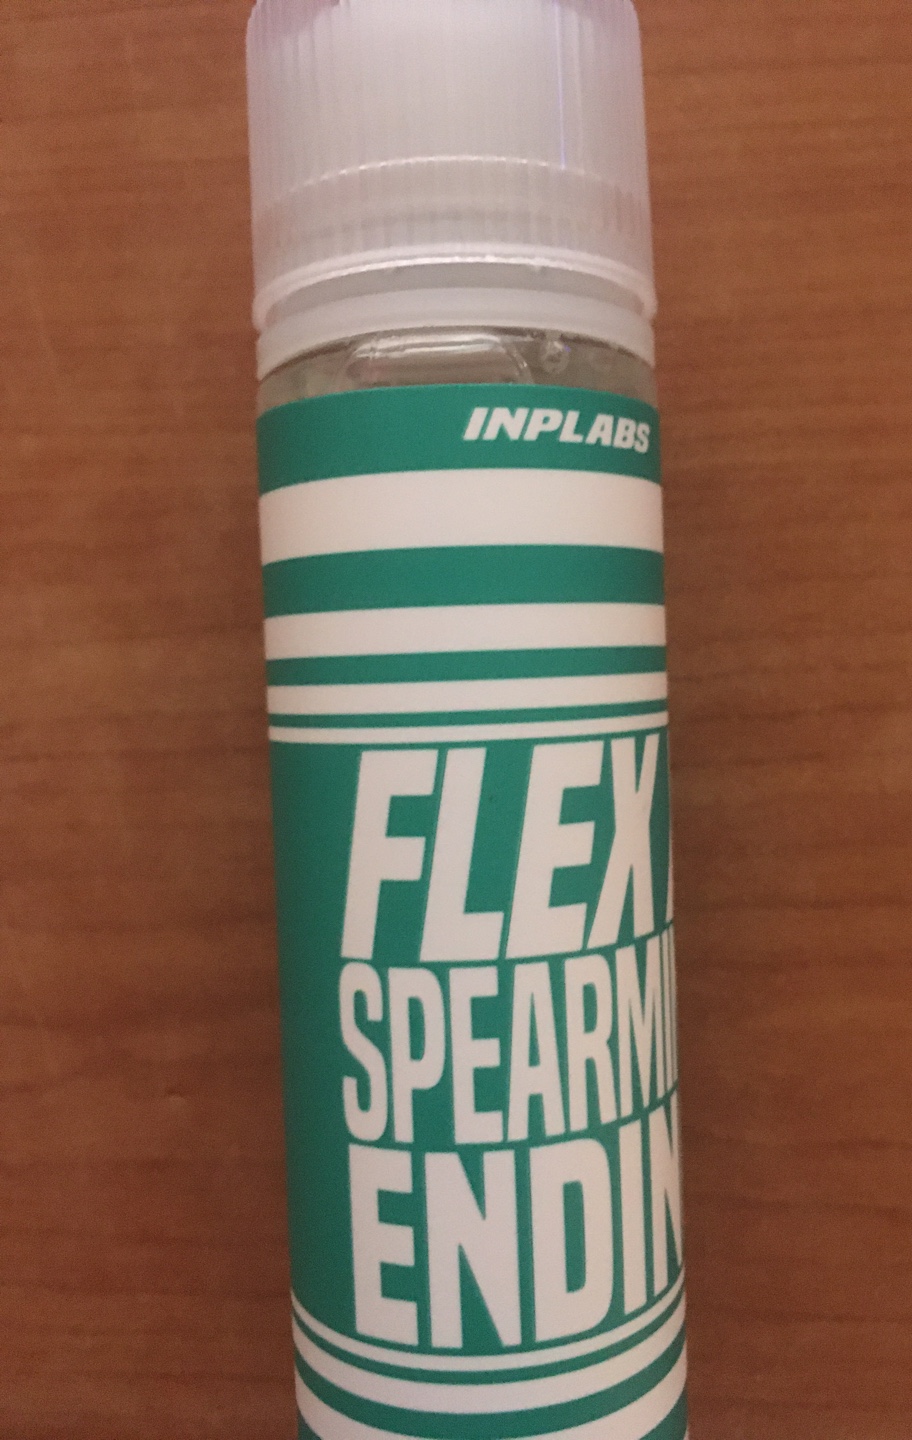 스피아민트 - [FLEX X] 플렉스 8가지 맛 (합성) ● 폐호흡